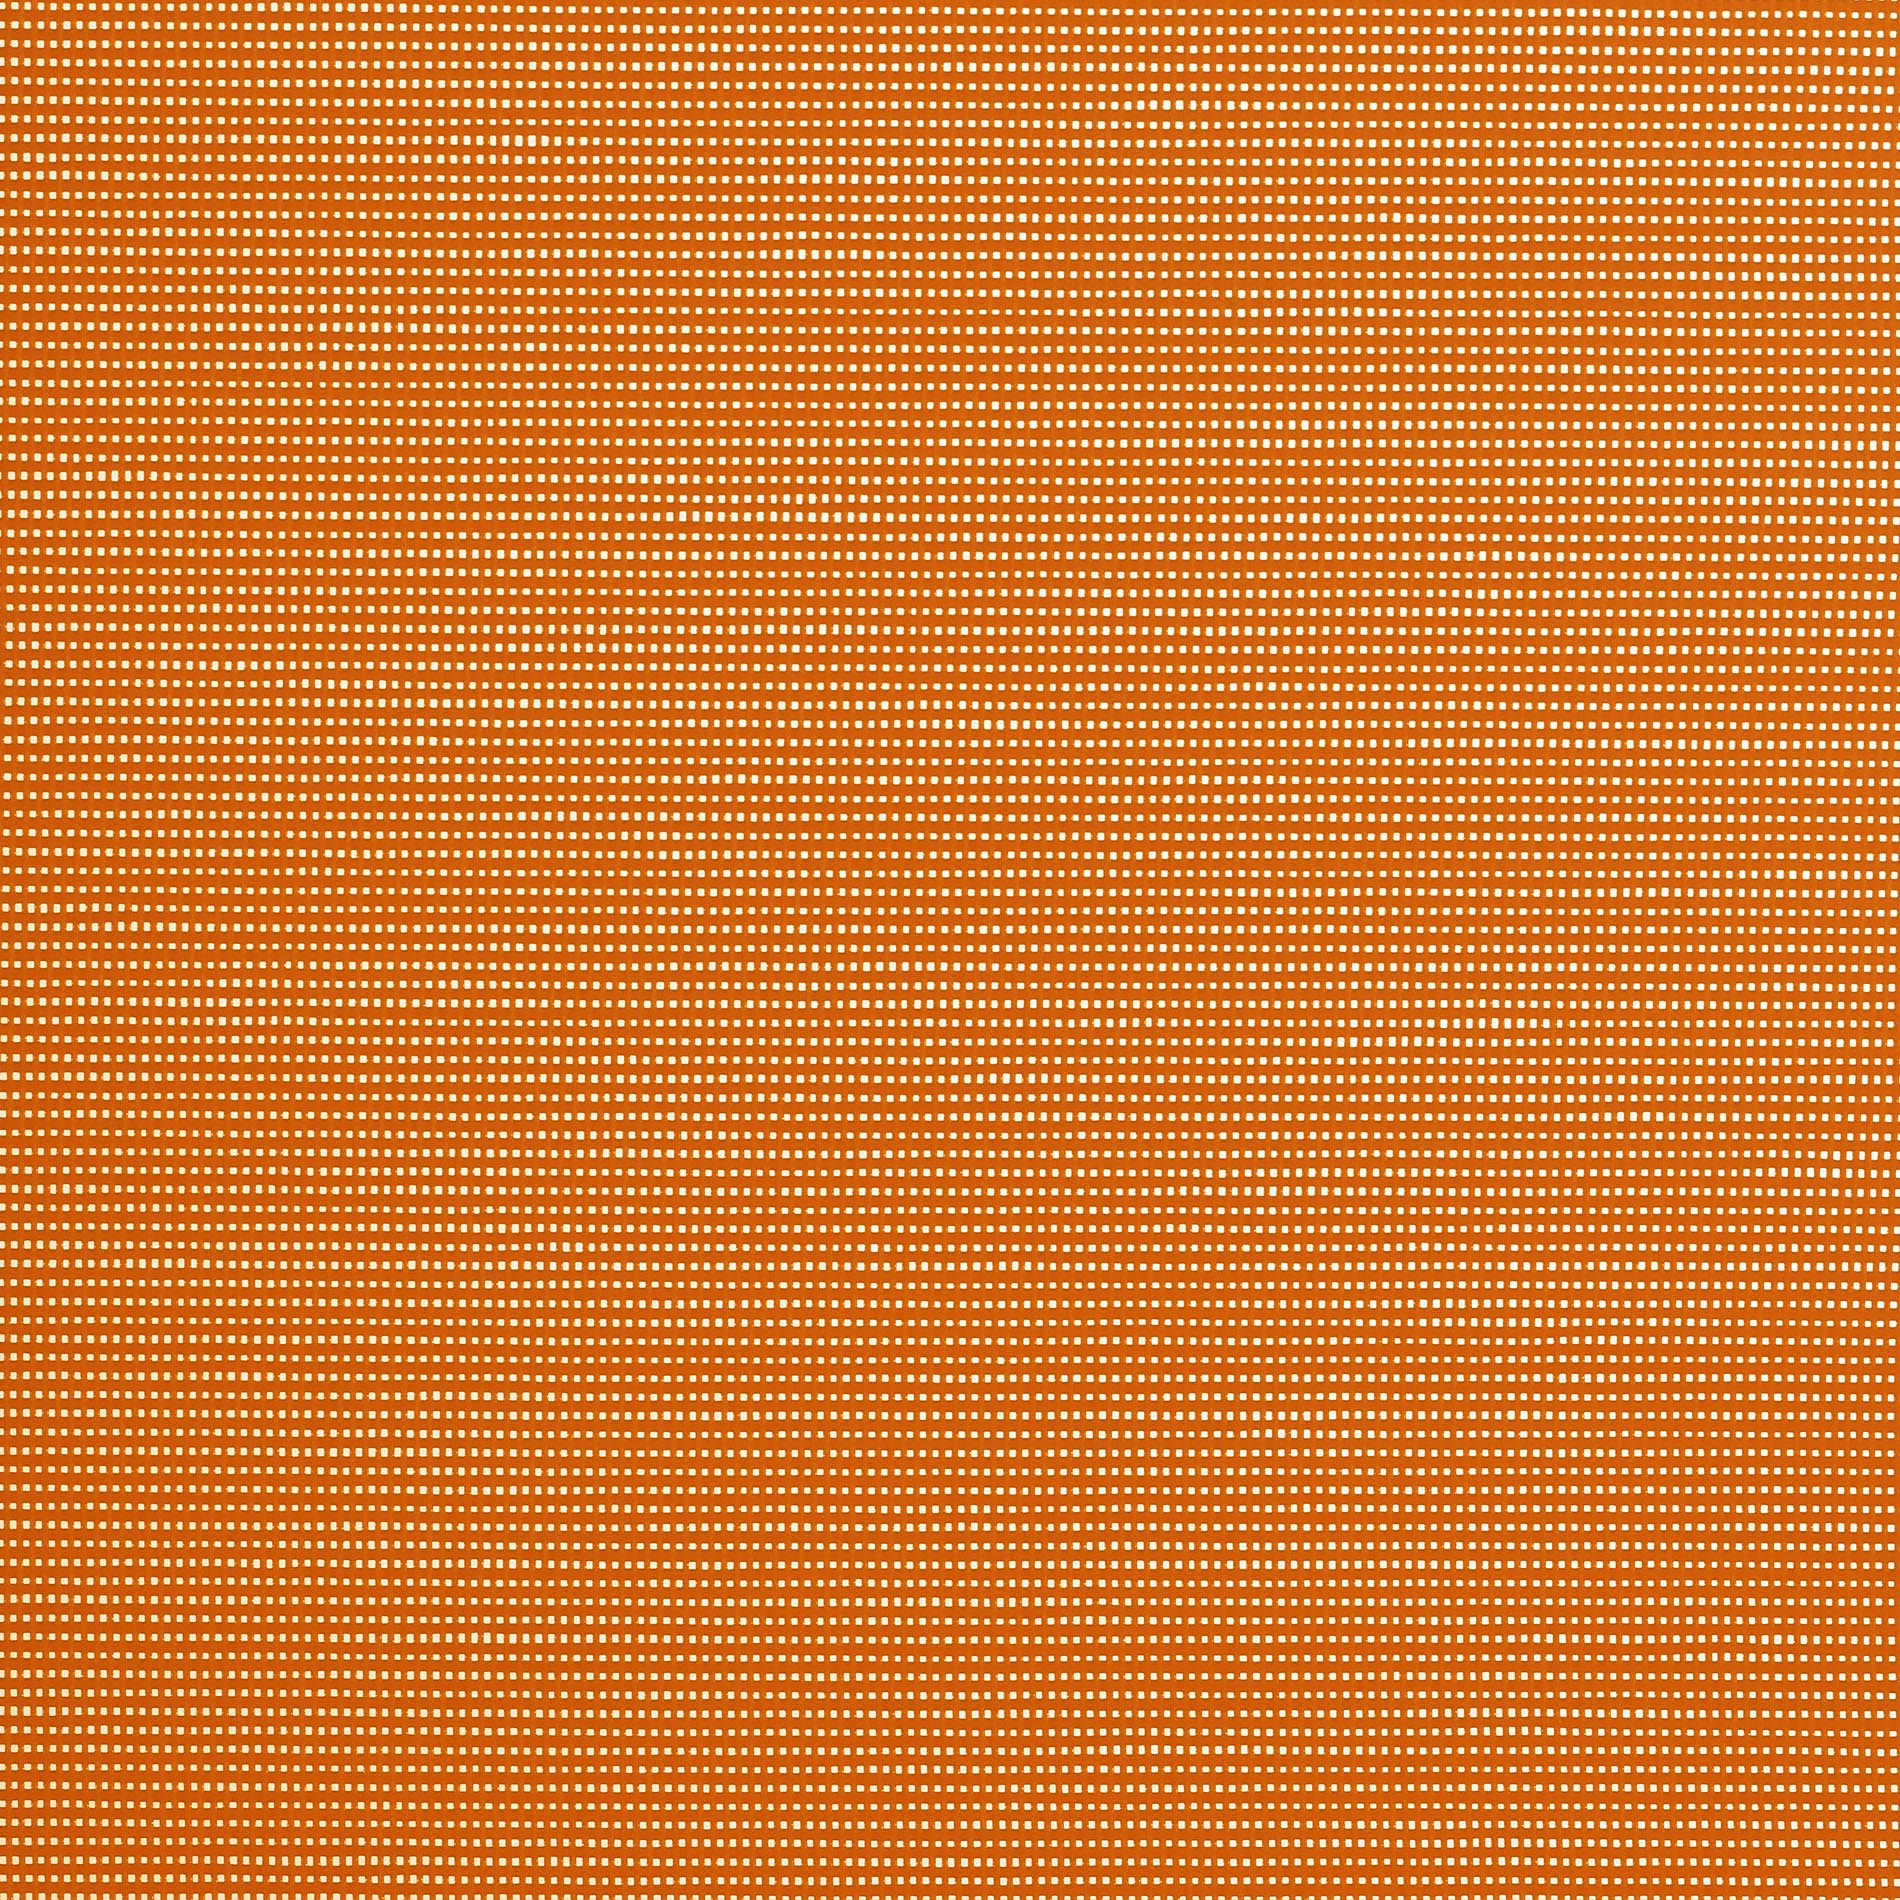 Altex - Fabric - SOLTIS HORIZON 86 - Orange - 86-8204